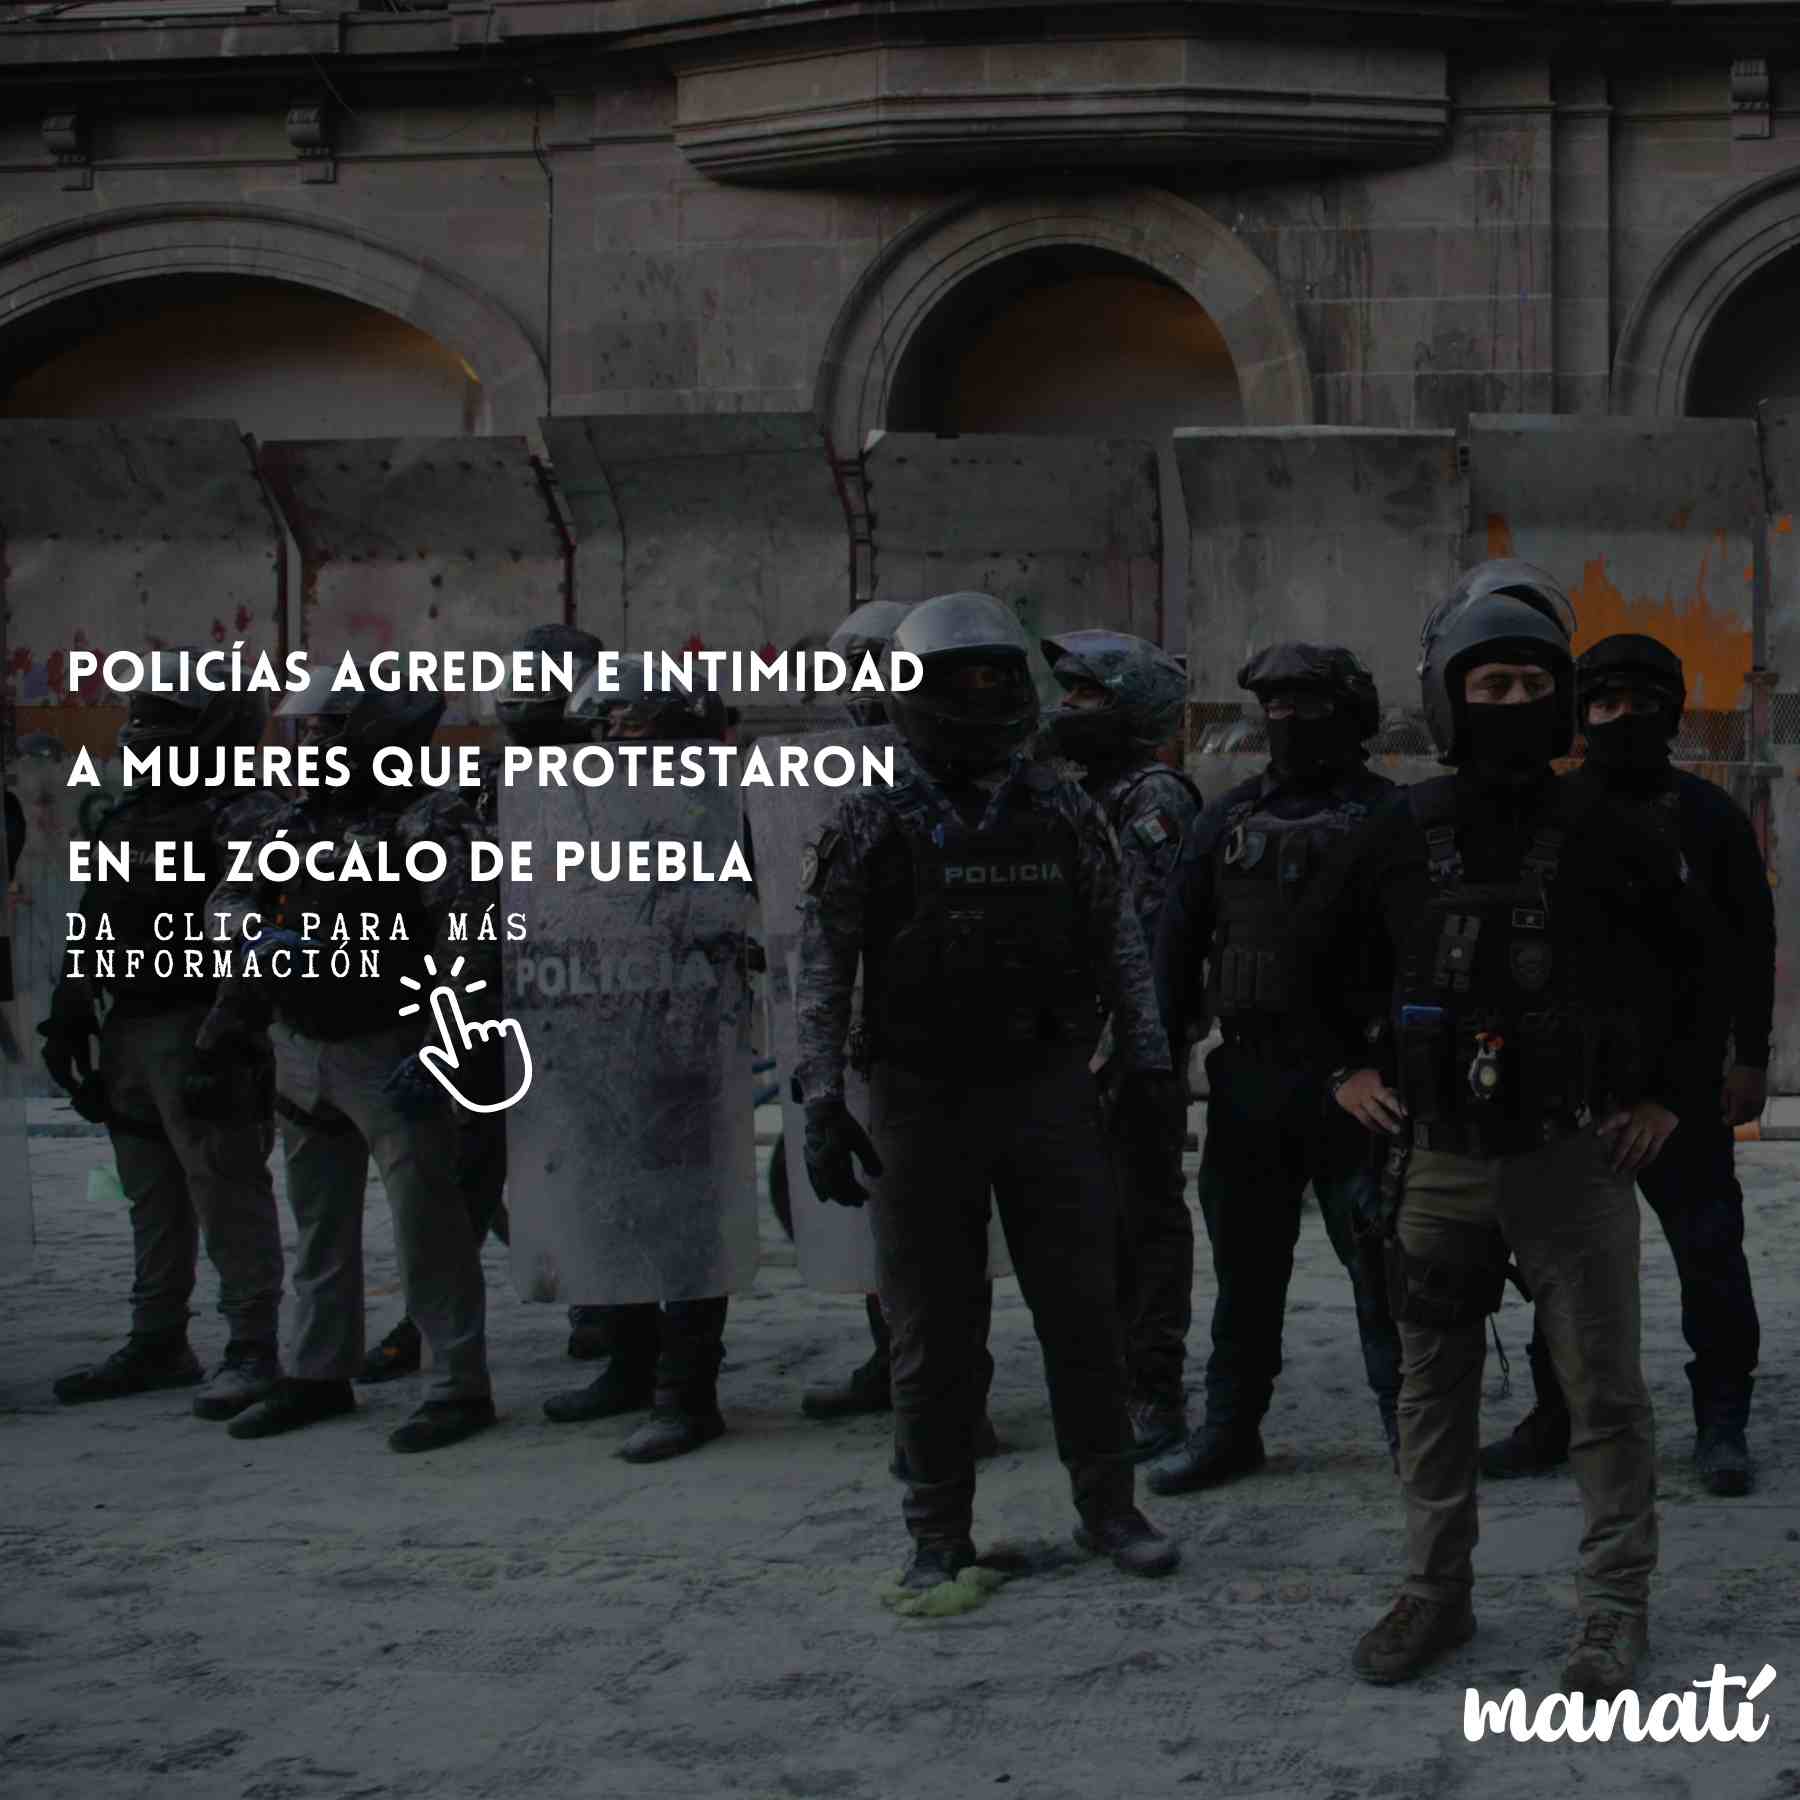 DETALLES DEL ADJUNTO policias-puebla-palacion-municipal-zocalo.jpeg